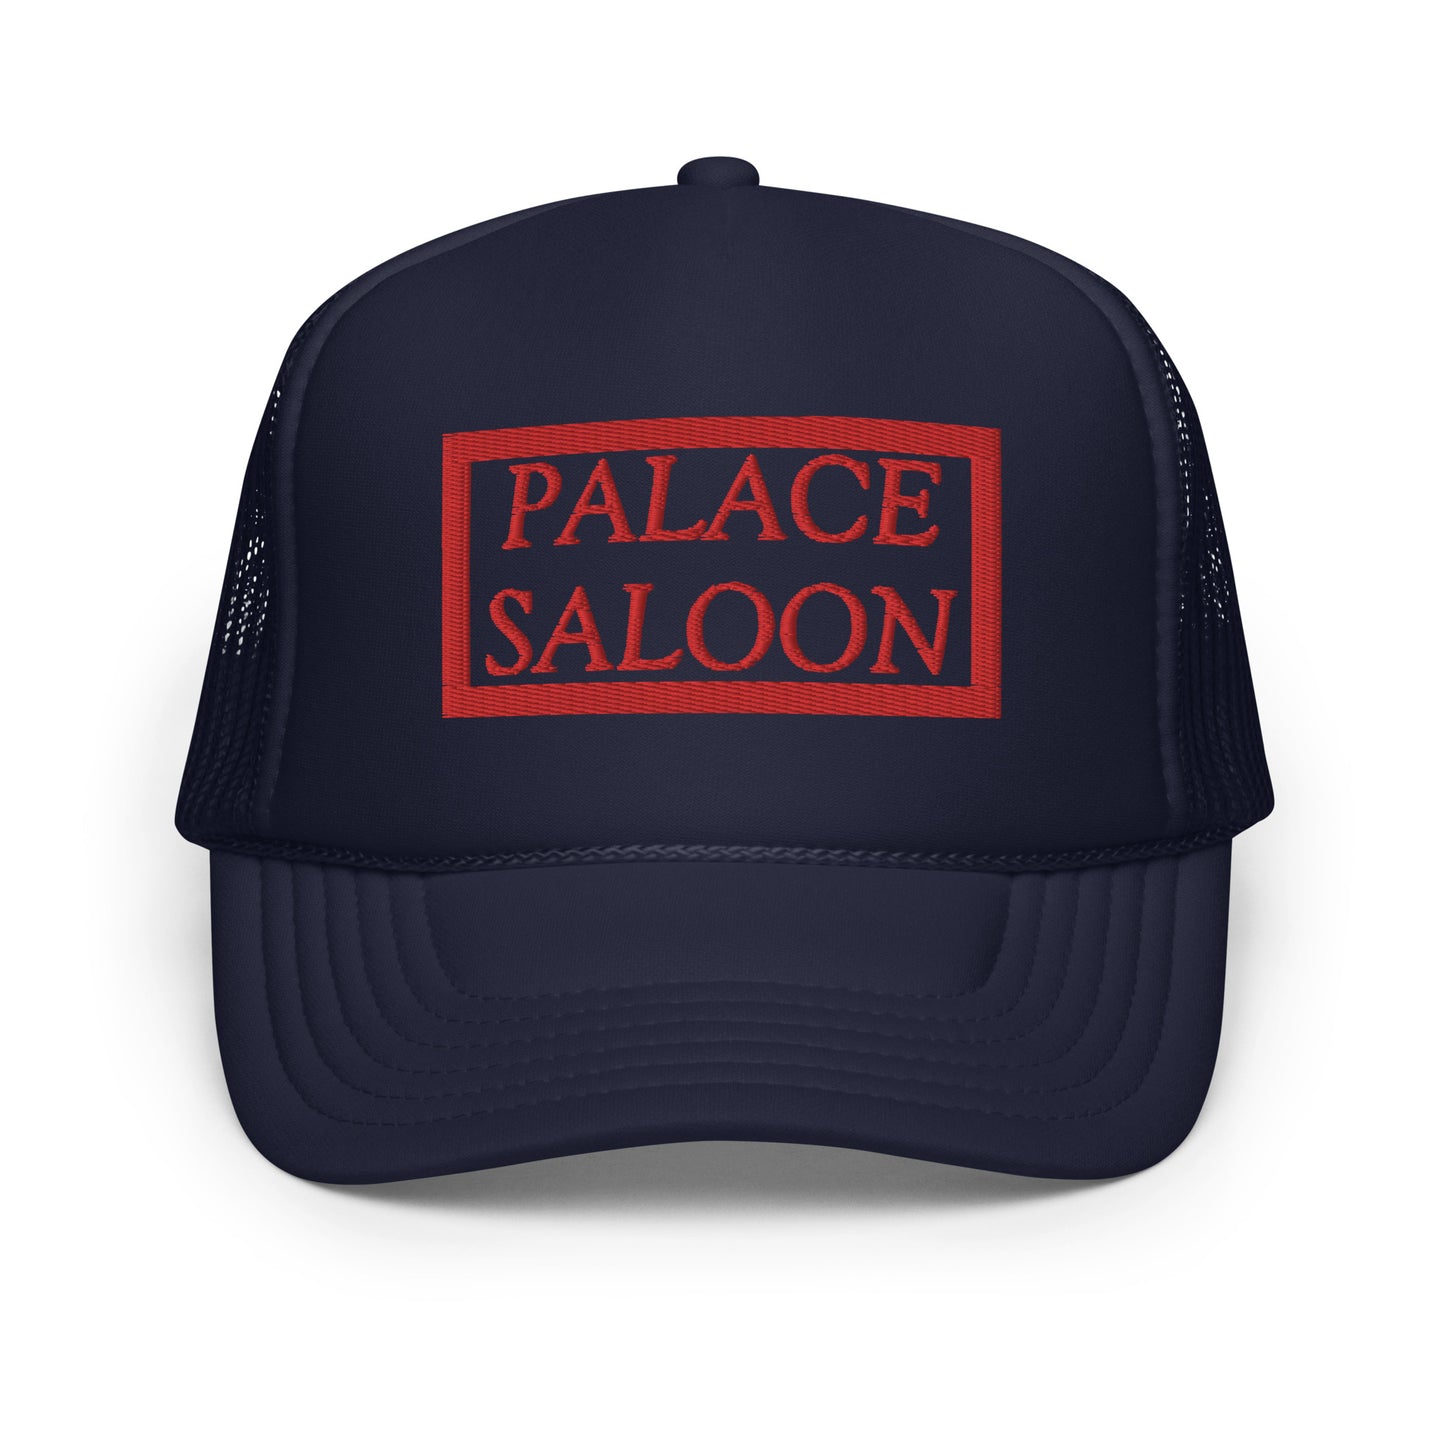 Palace Saloon Foam trucker hat